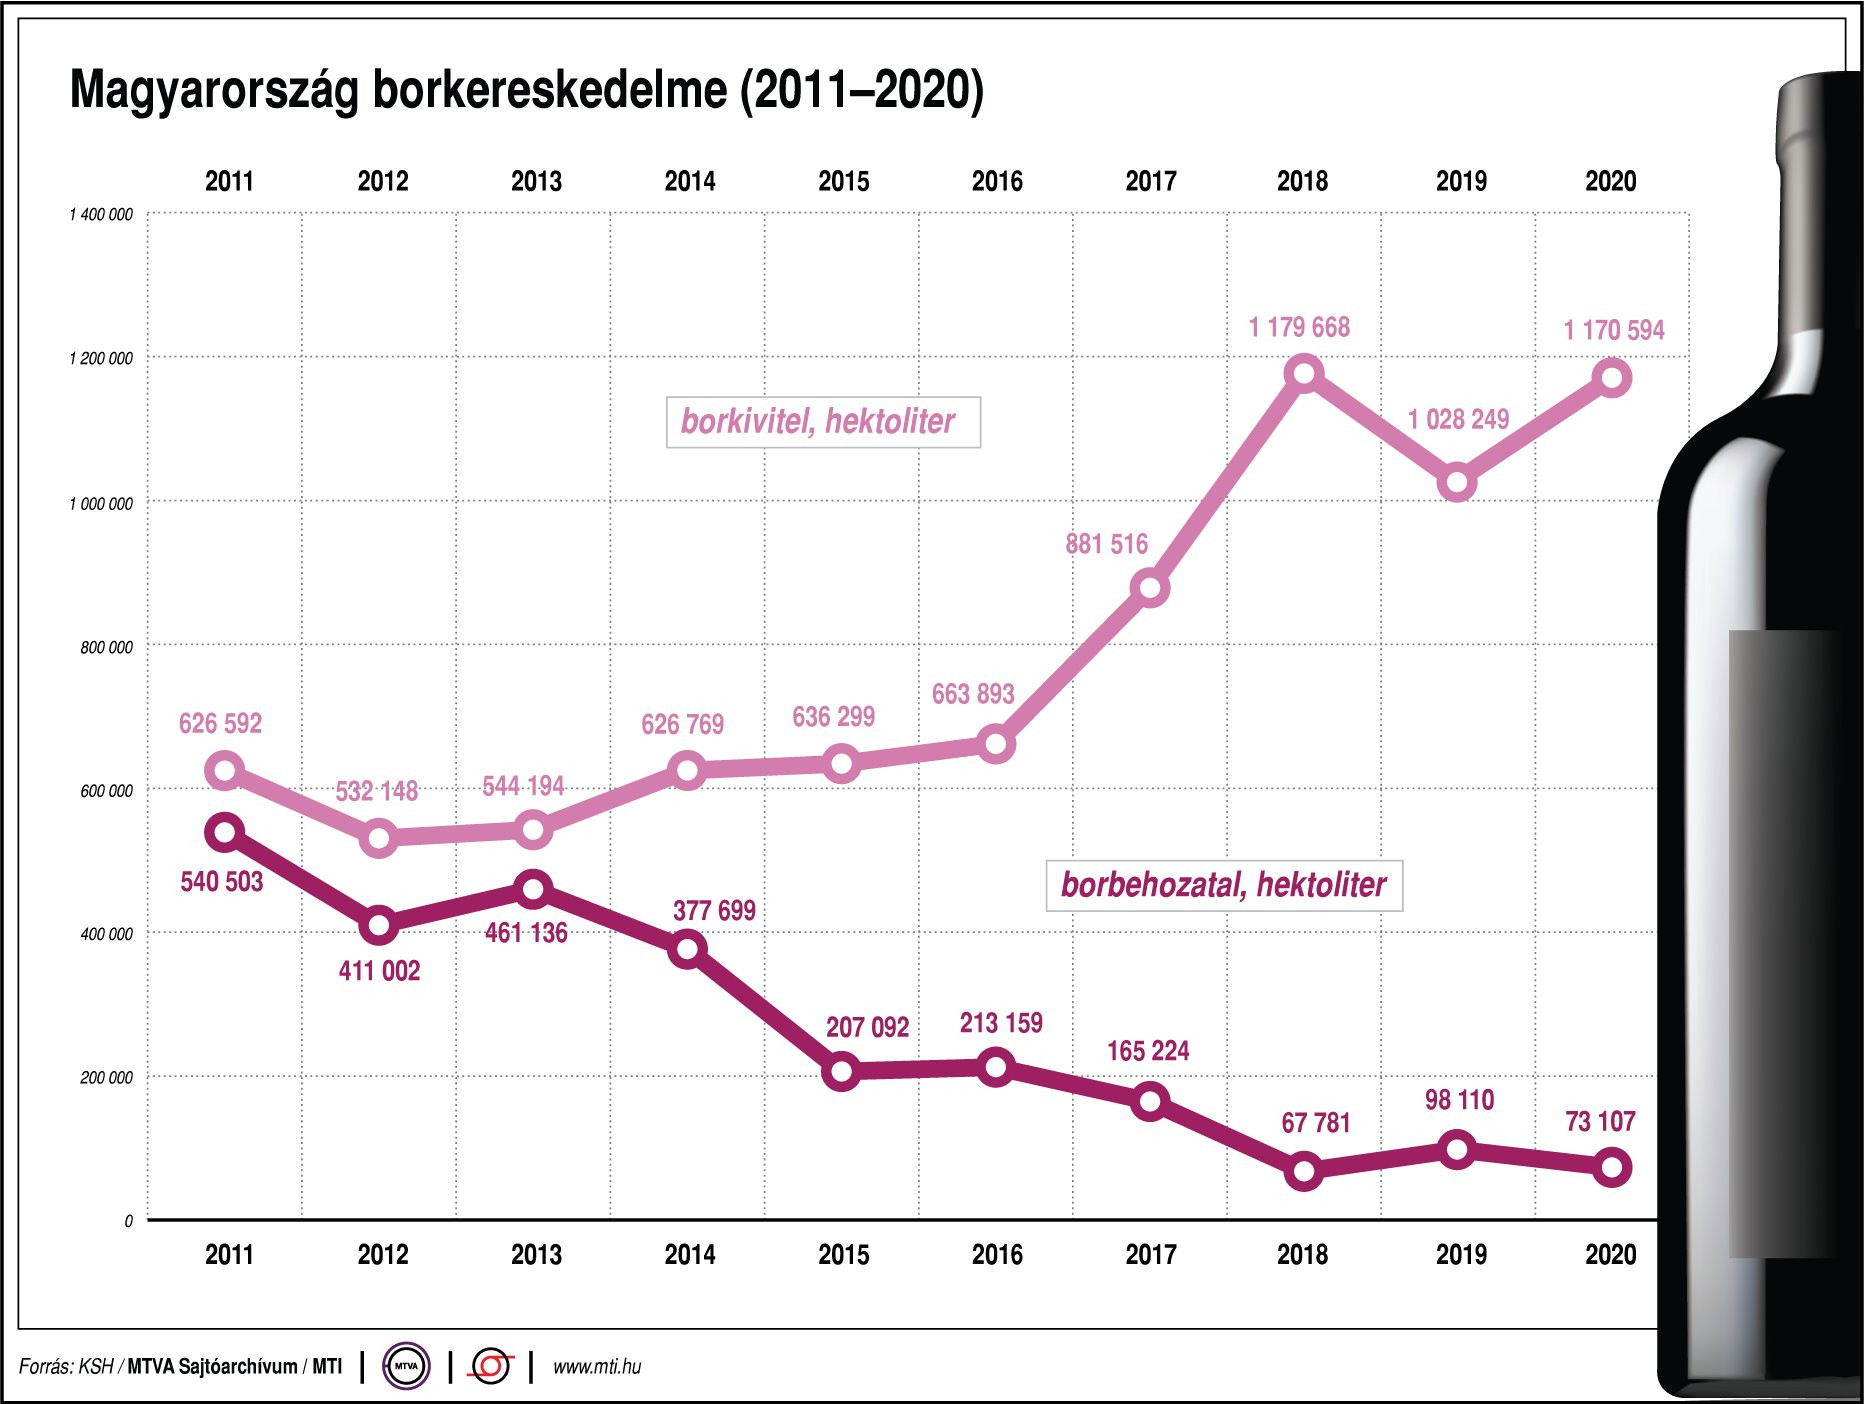 Magyarország borkereskedelme, 2011-2020